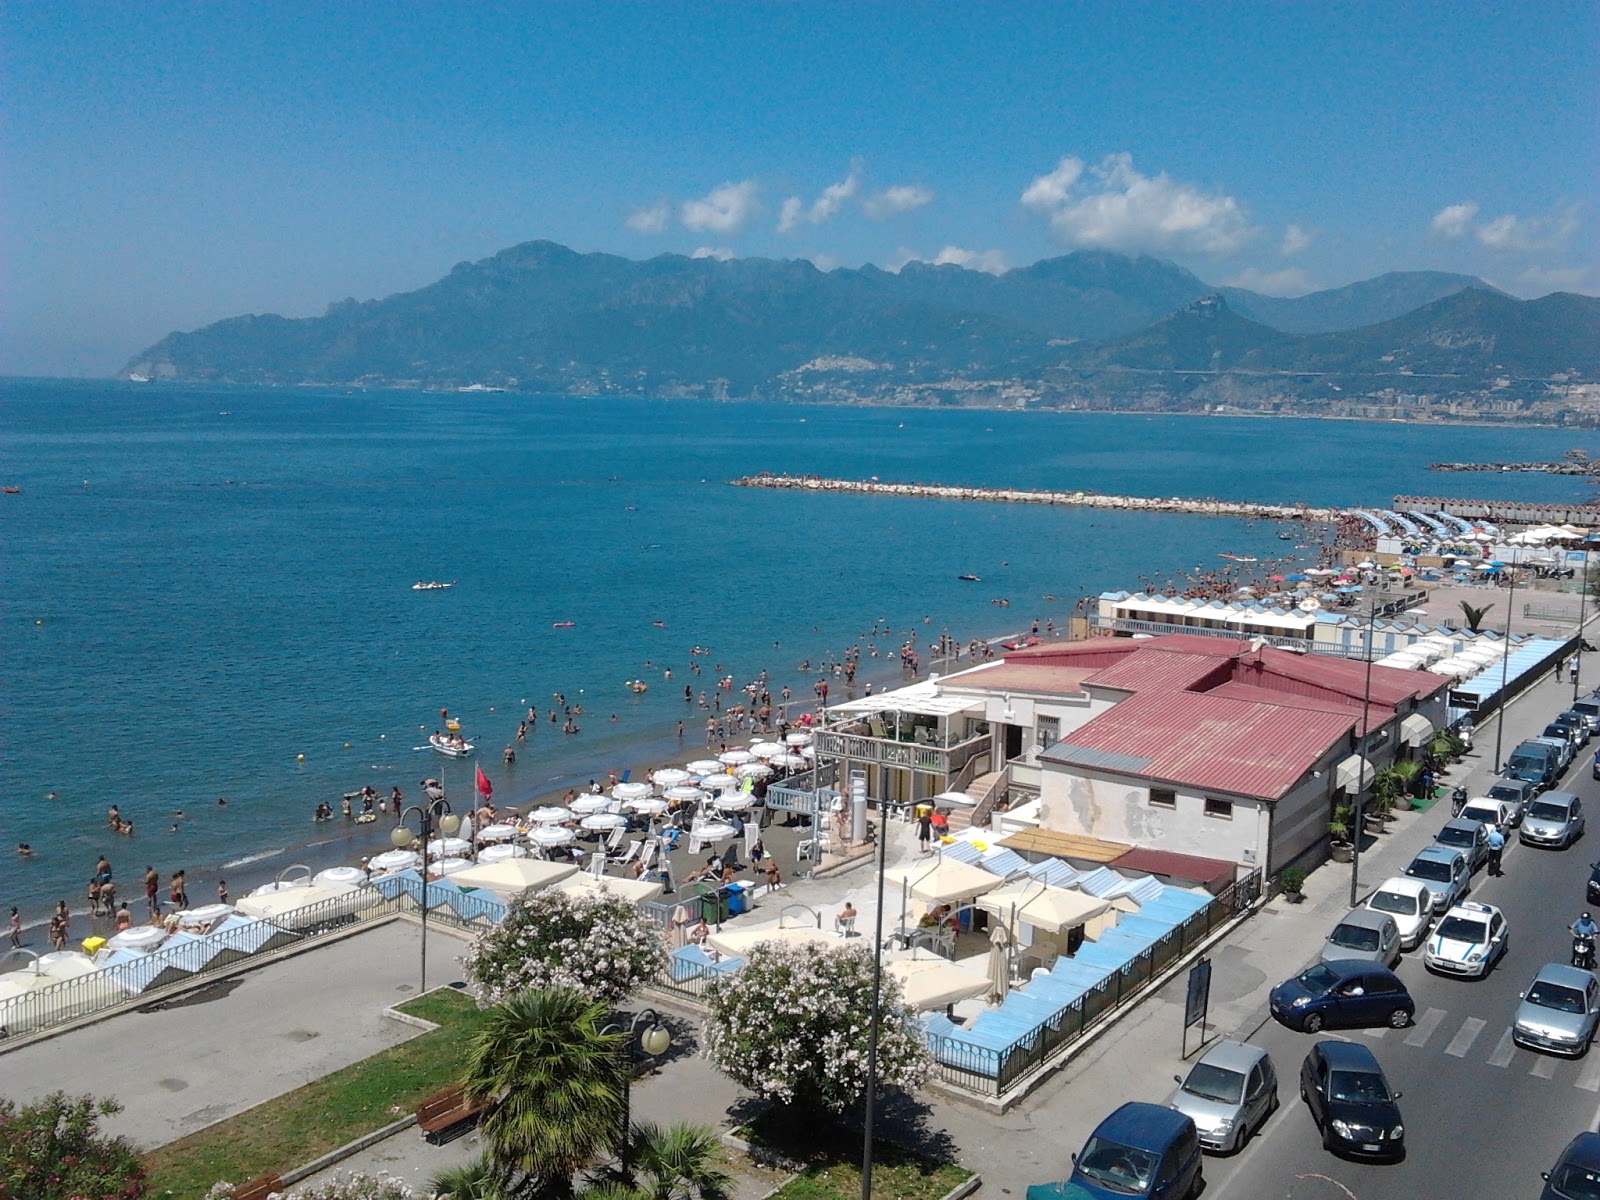 Salerno beach III'in fotoğrafı geniş plaj ile birlikte